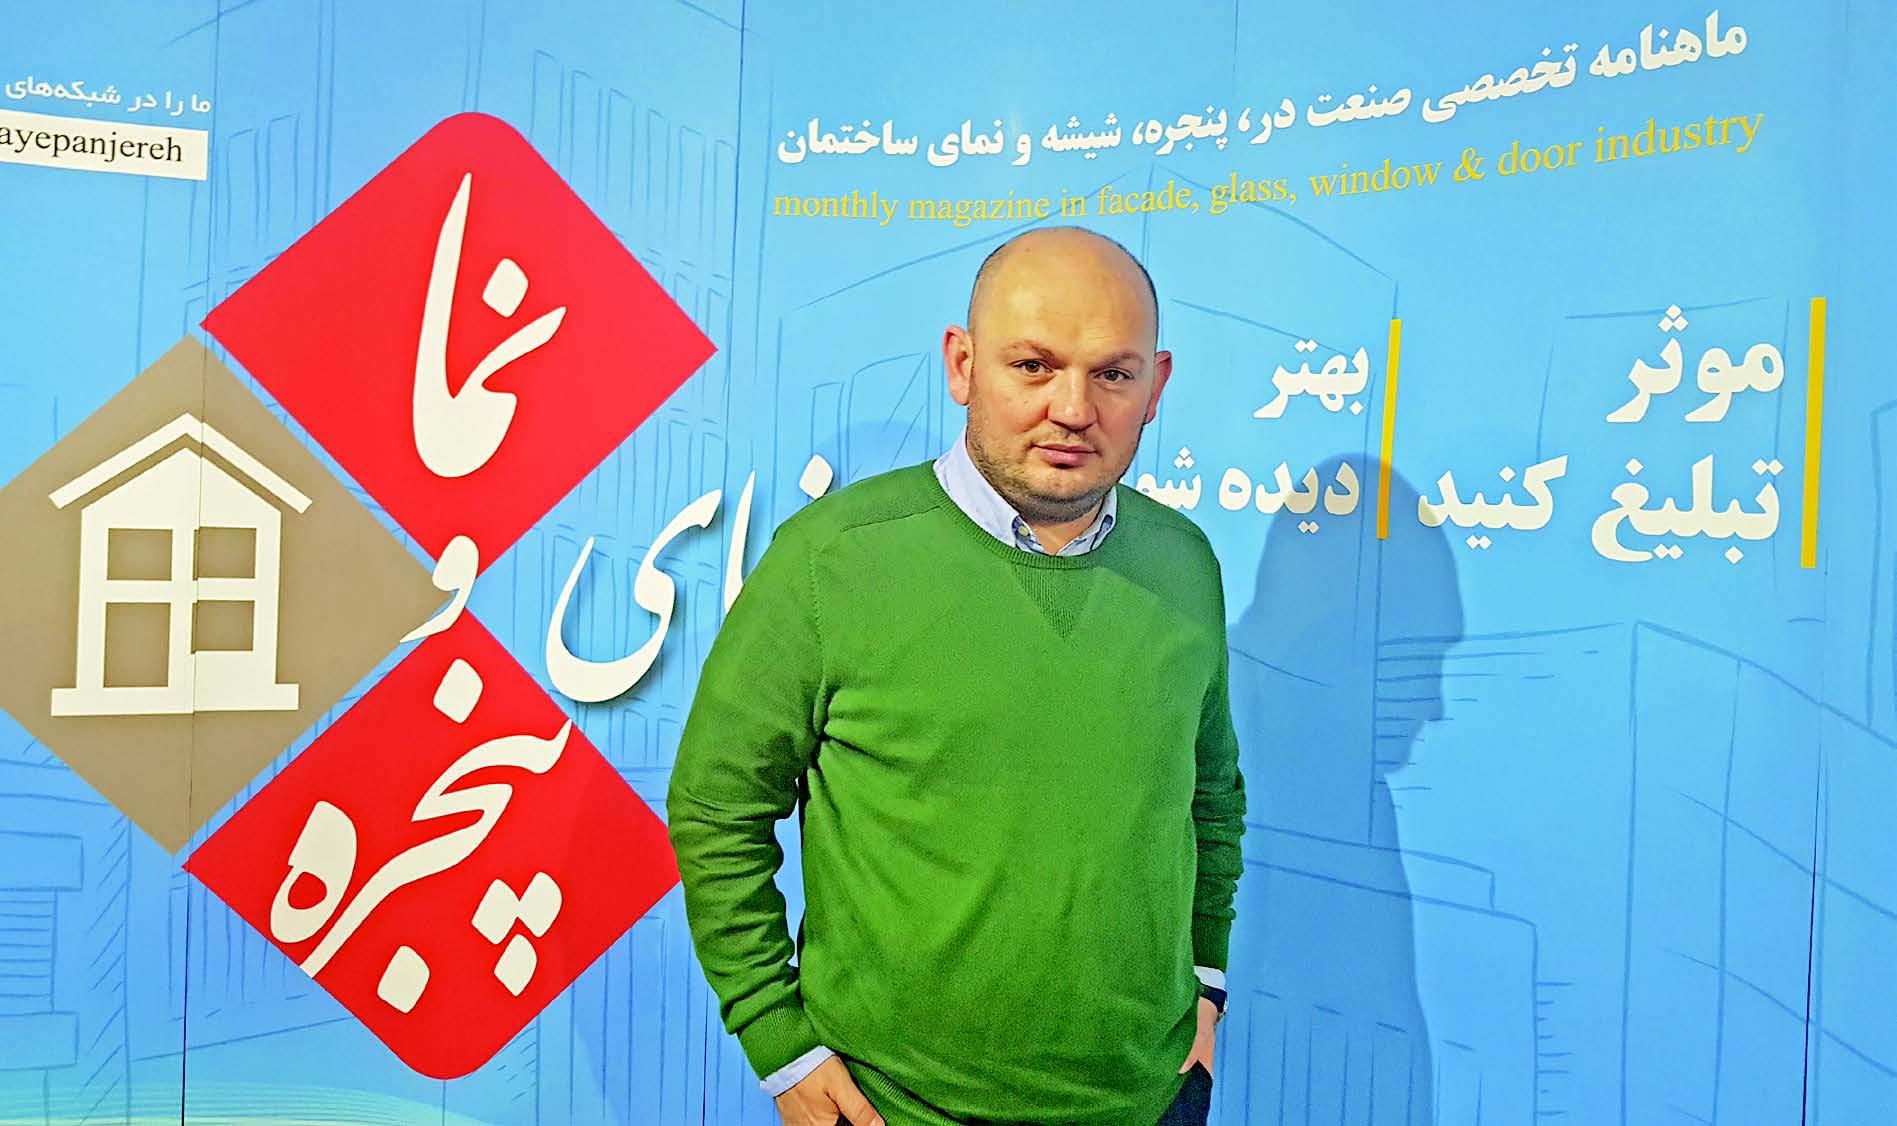 حضور کان کوتلو (KAAN KUTLU) رئیس هیأت مدیره انجمن در و پنجره ترکیه در ایران